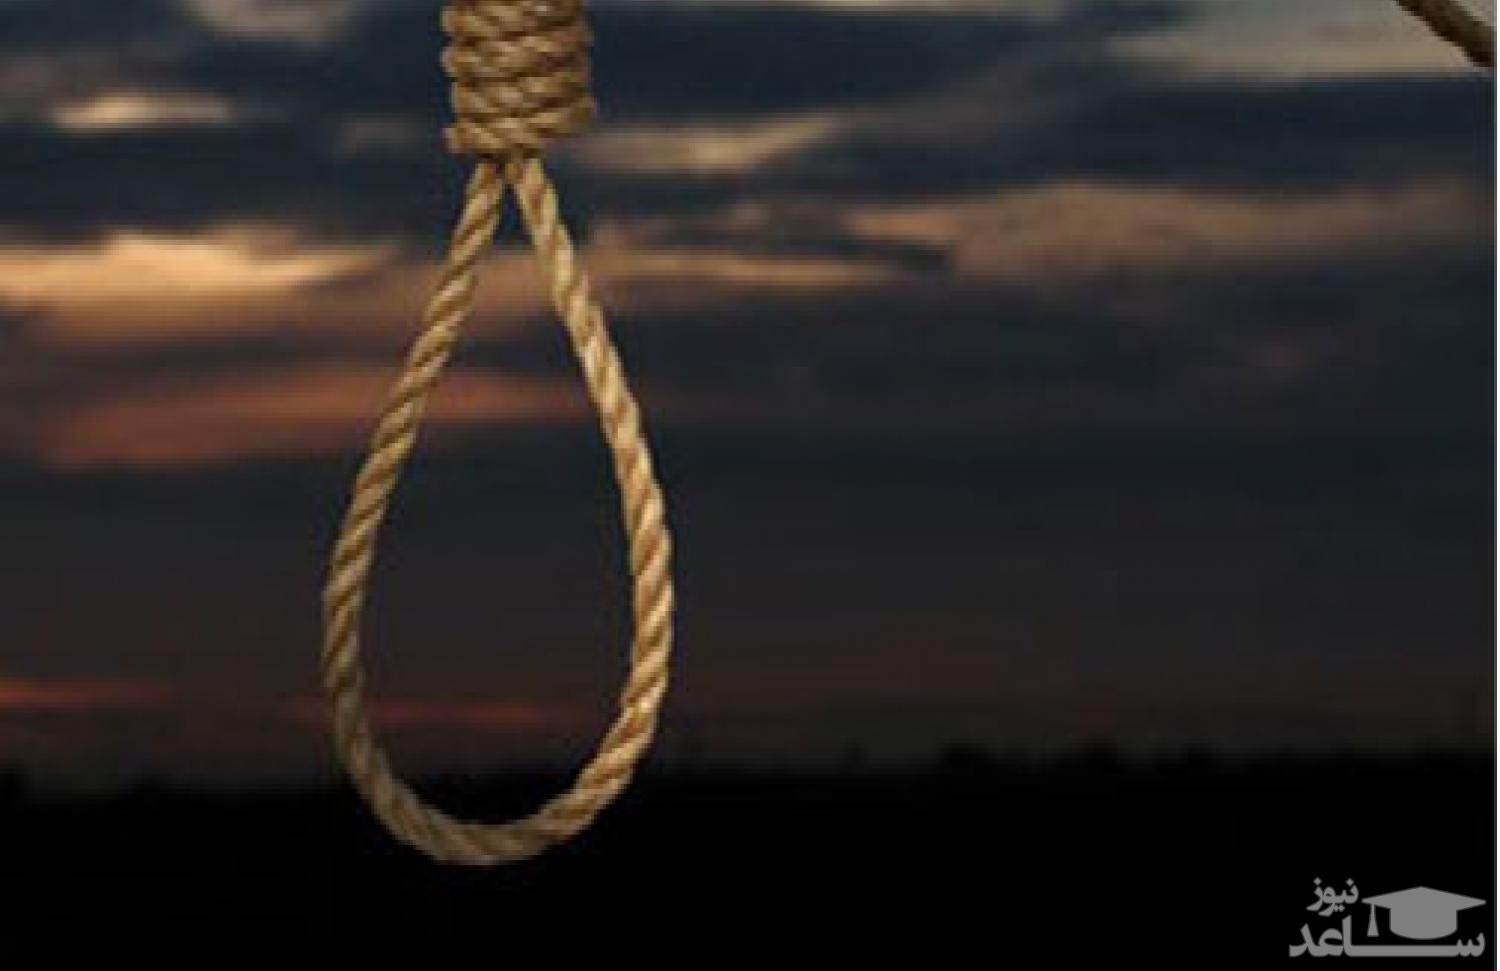 اعدام پدر بی رحم در زندان رجایی شهر / او همسر و ۲ فرزندش را کشته بود